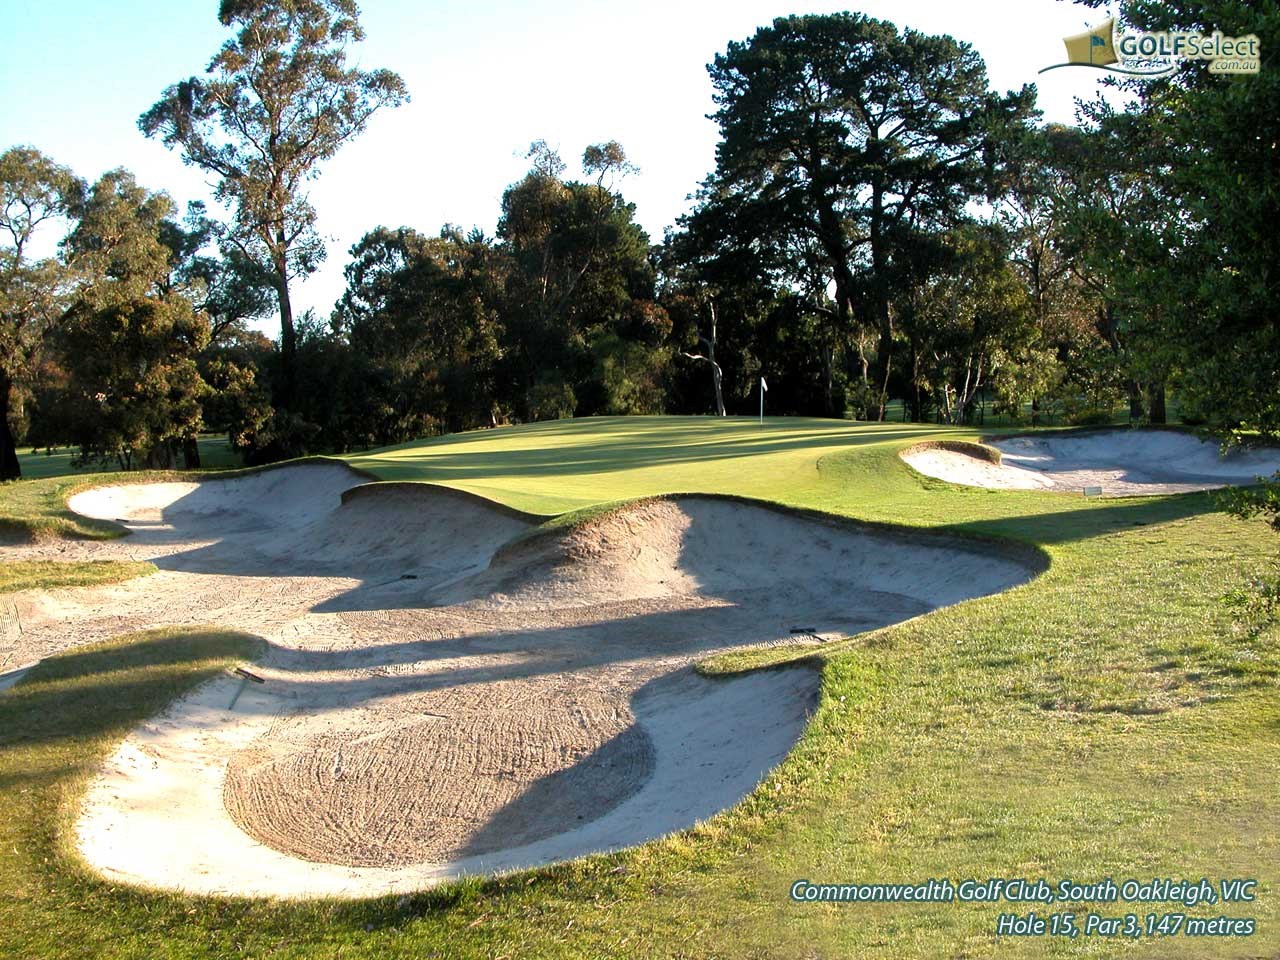 Commonwealth Golf Club Hole 15